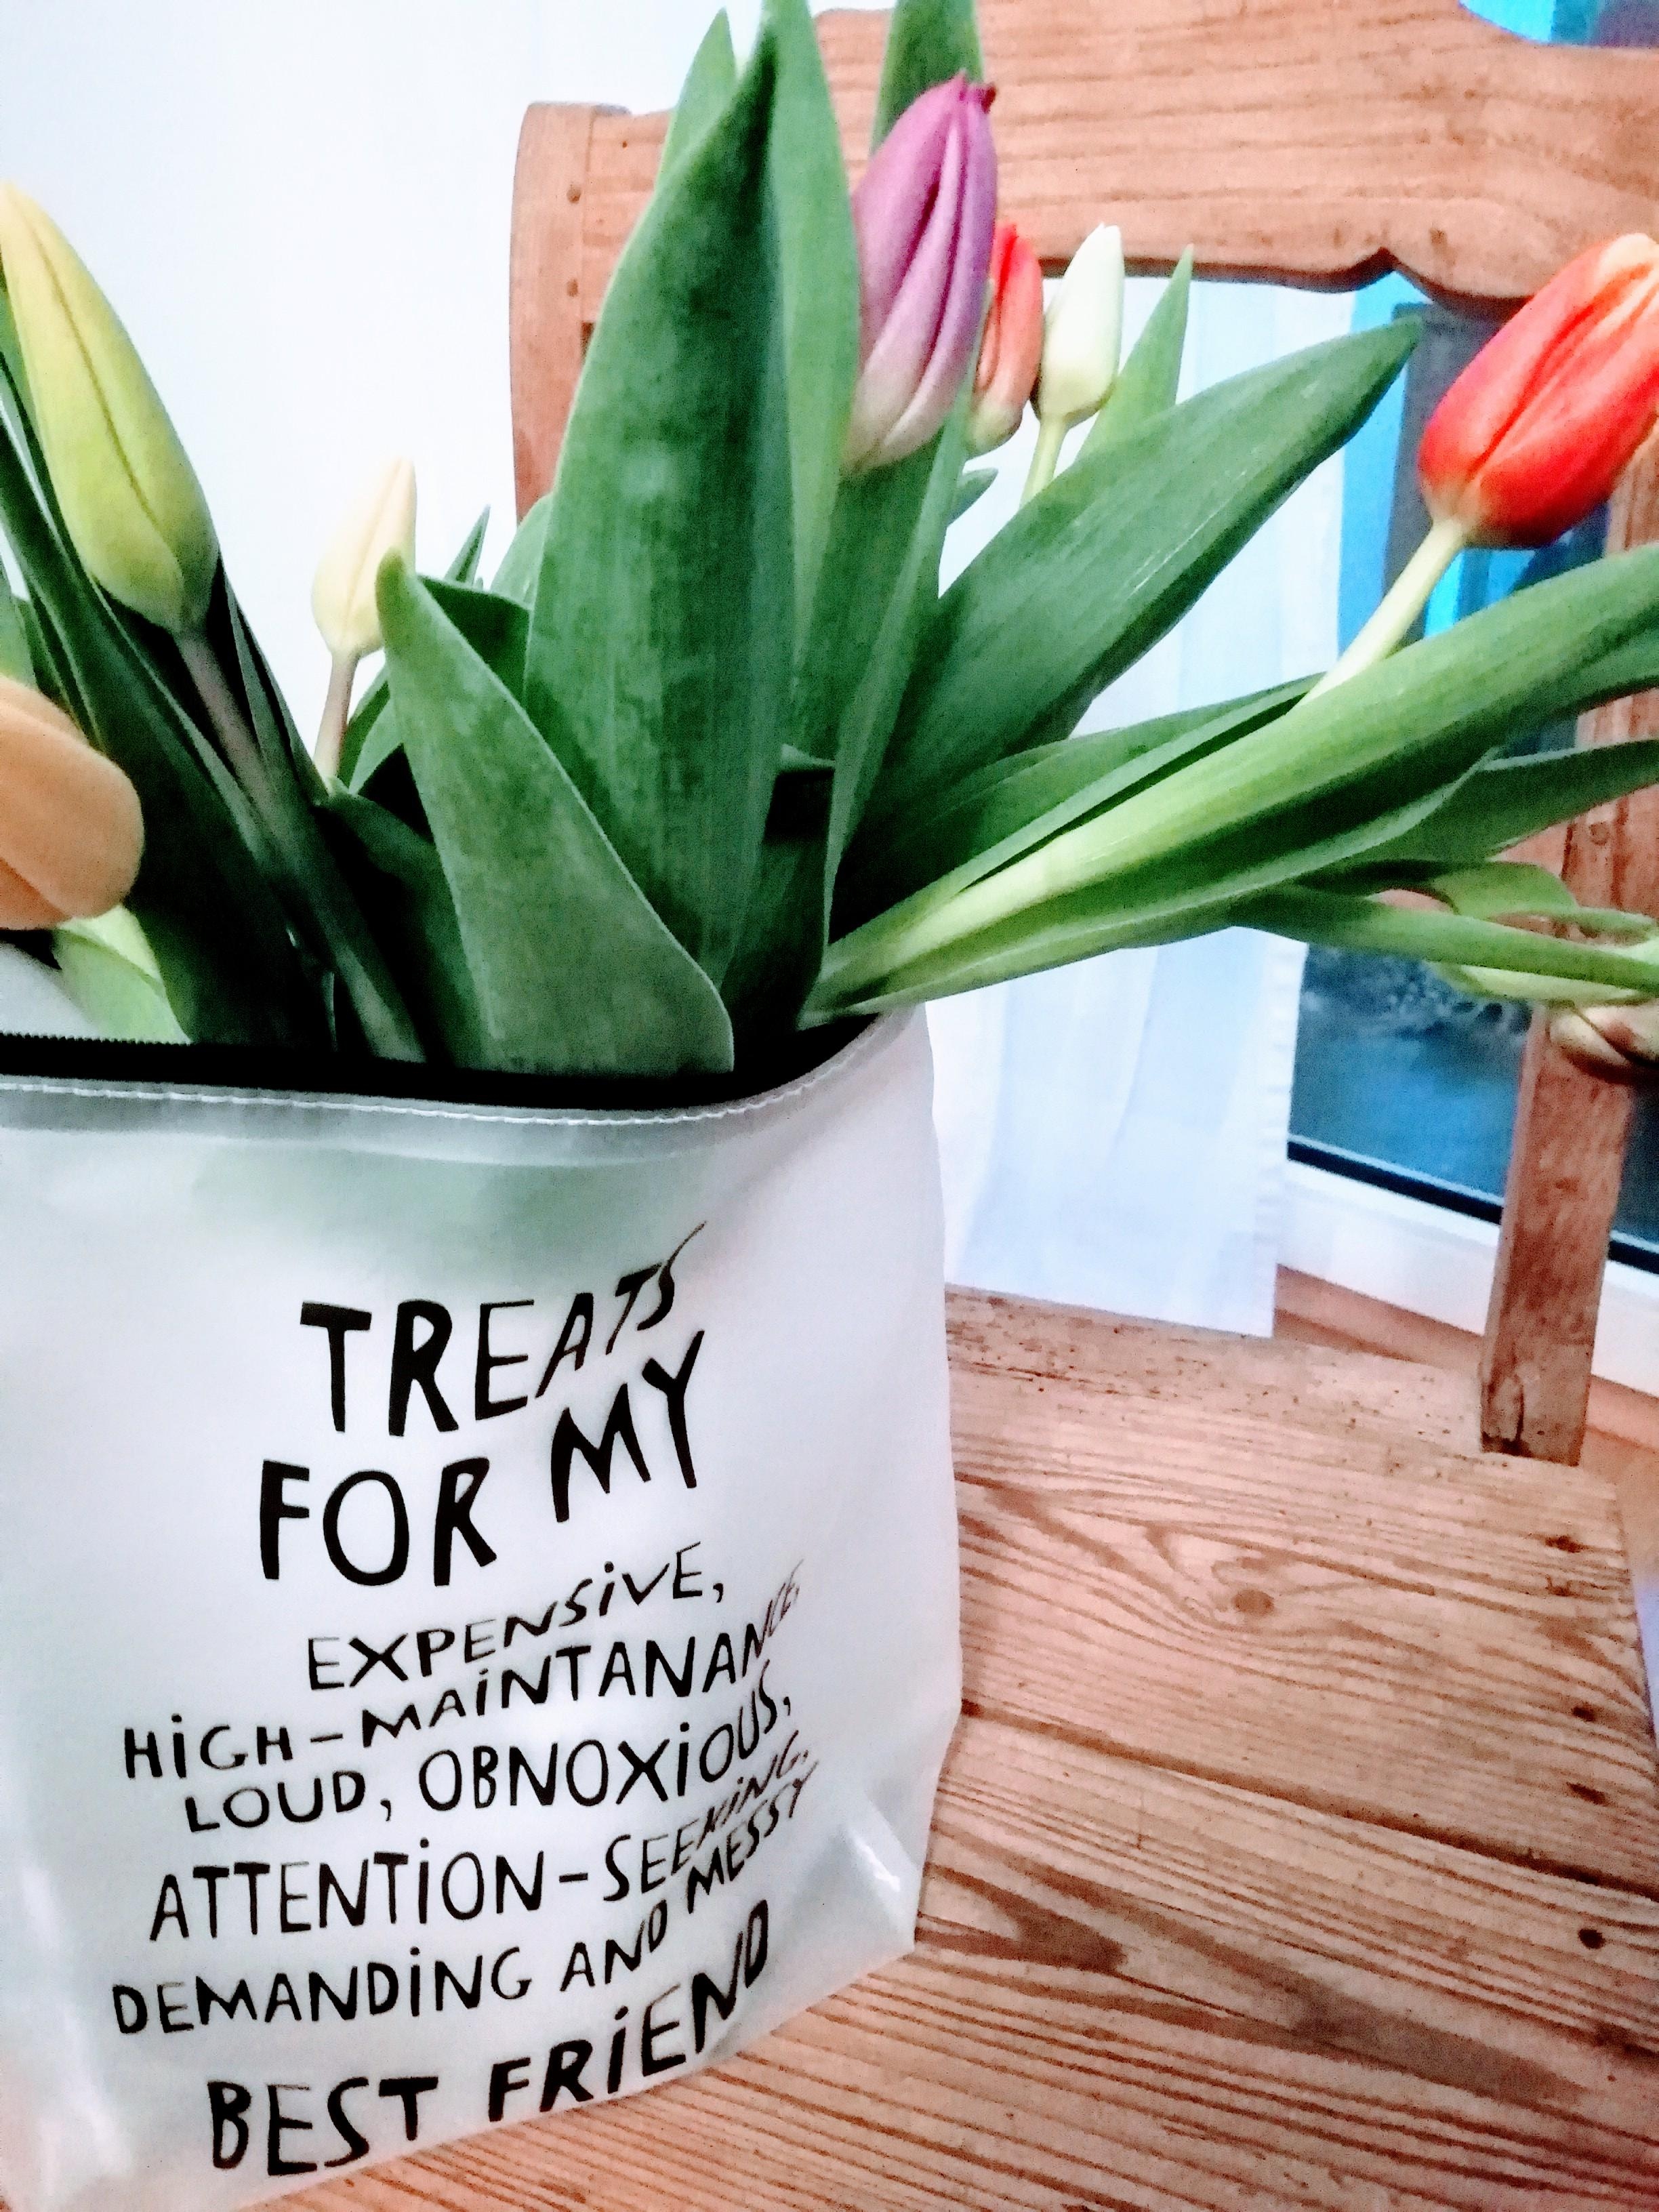 Improvisierte Vase 😄
#freshflowerfriday #Blumenliebe #Tulpen #Frühling #Vase #upcycling 